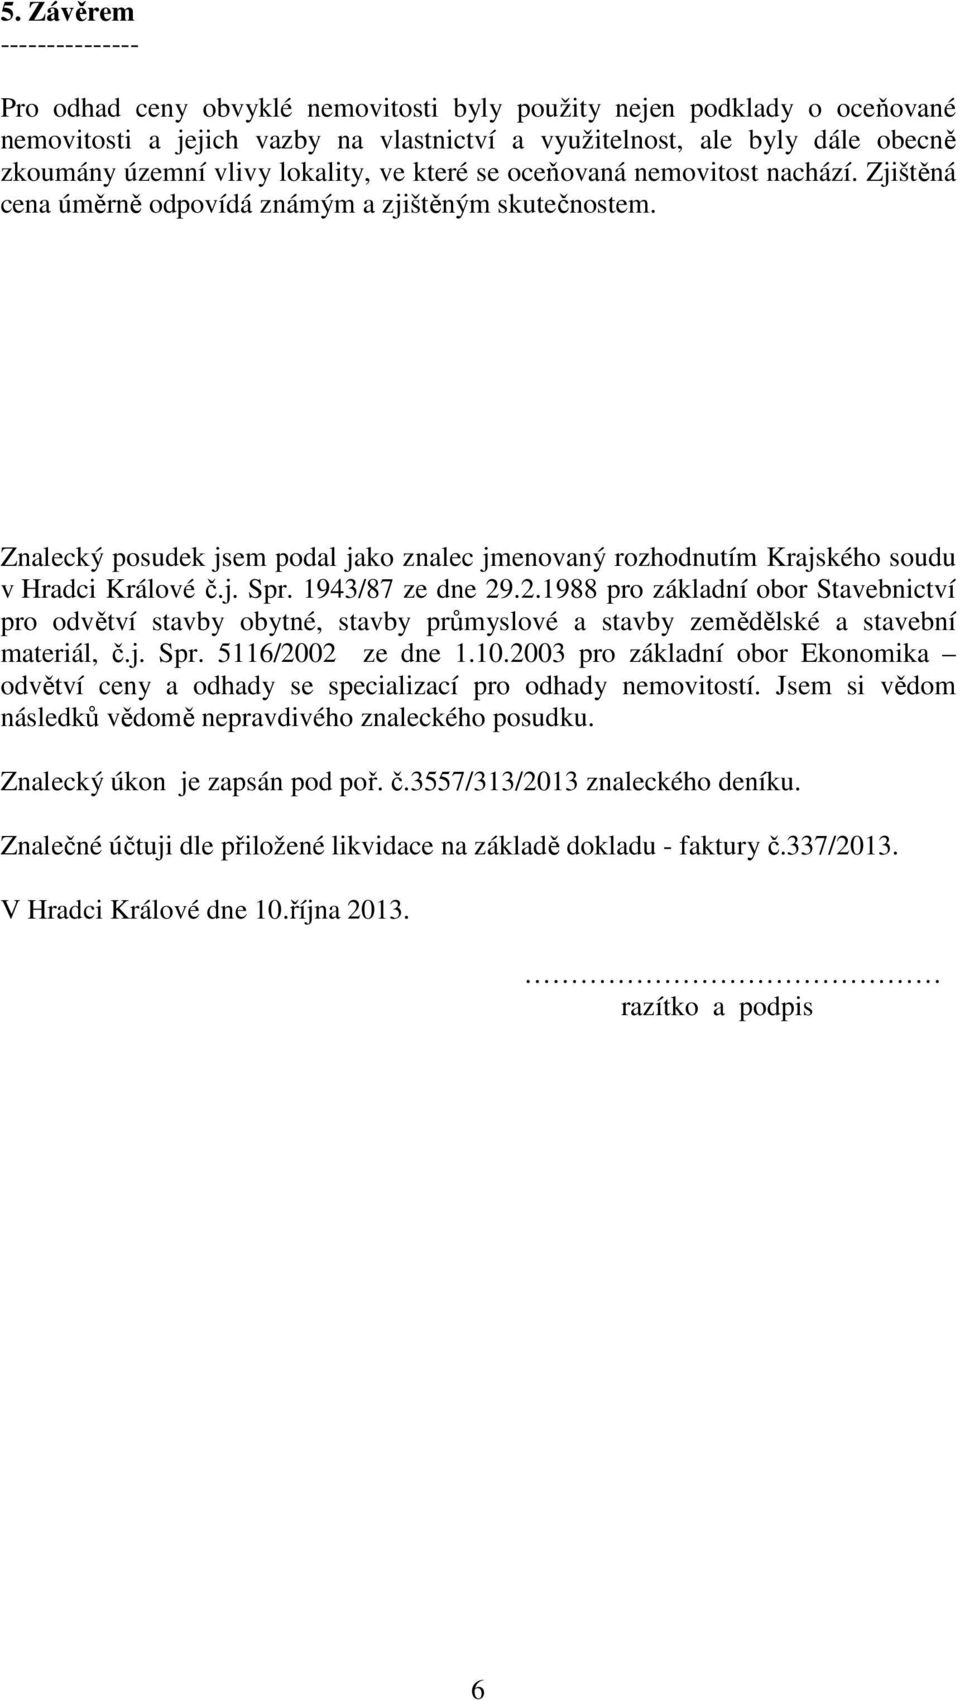 Znalecký posudek jsem podal jako znalec jmenovaný rozhodnutím Krajského soudu v Hradci Králové č.j. Spr. 1943/87 ze dne 29